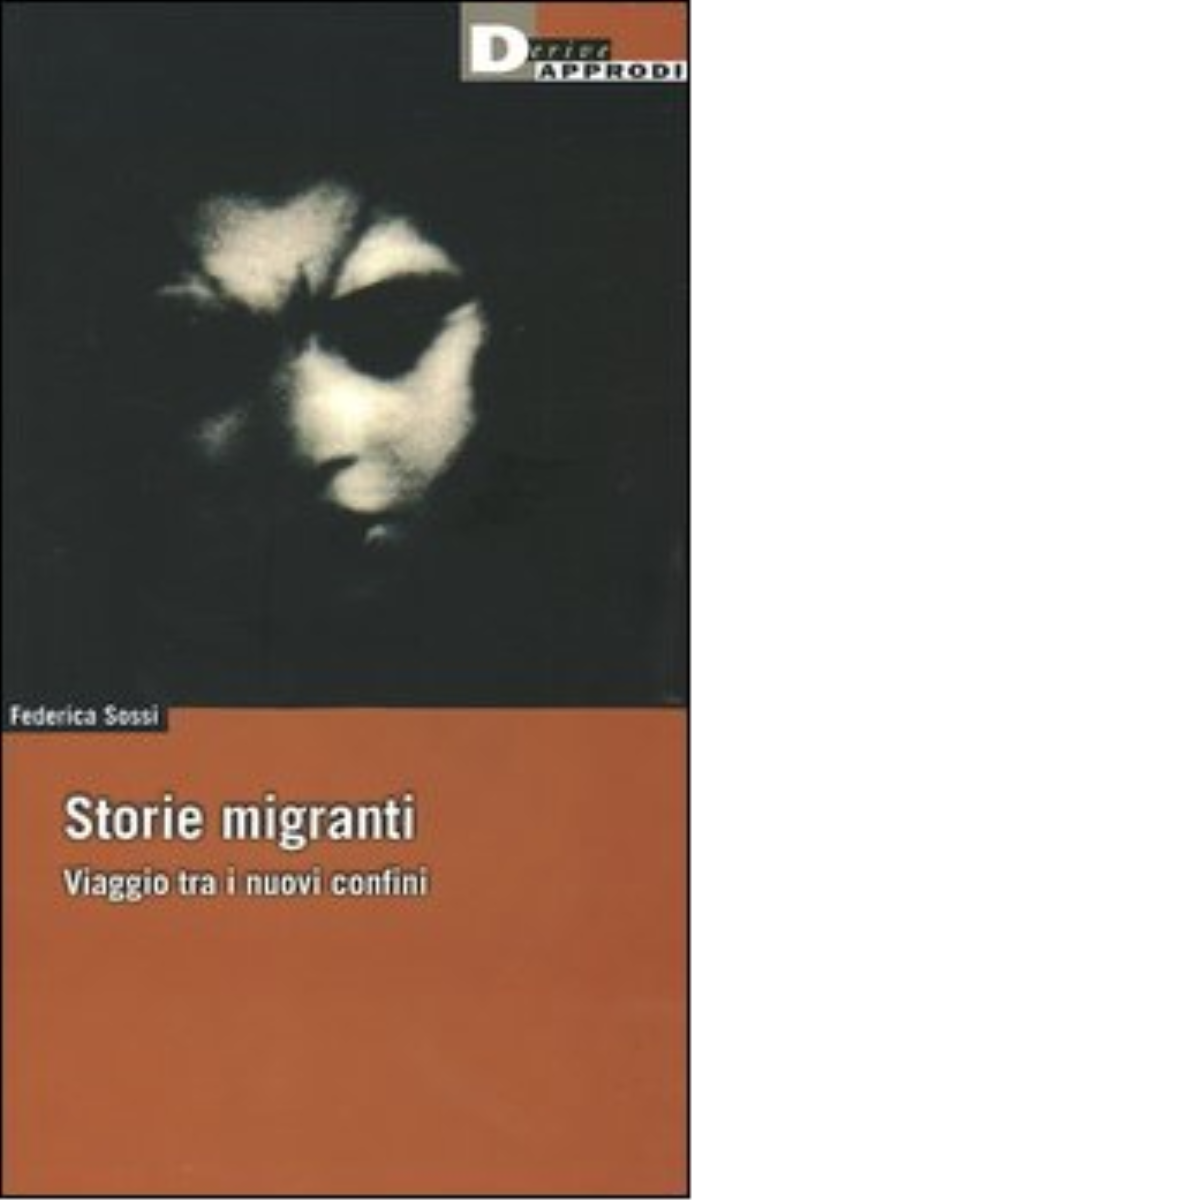 STORIE MIGRANTI. di FEDERICA SOSSI - DeriveApprodi editore, 2005